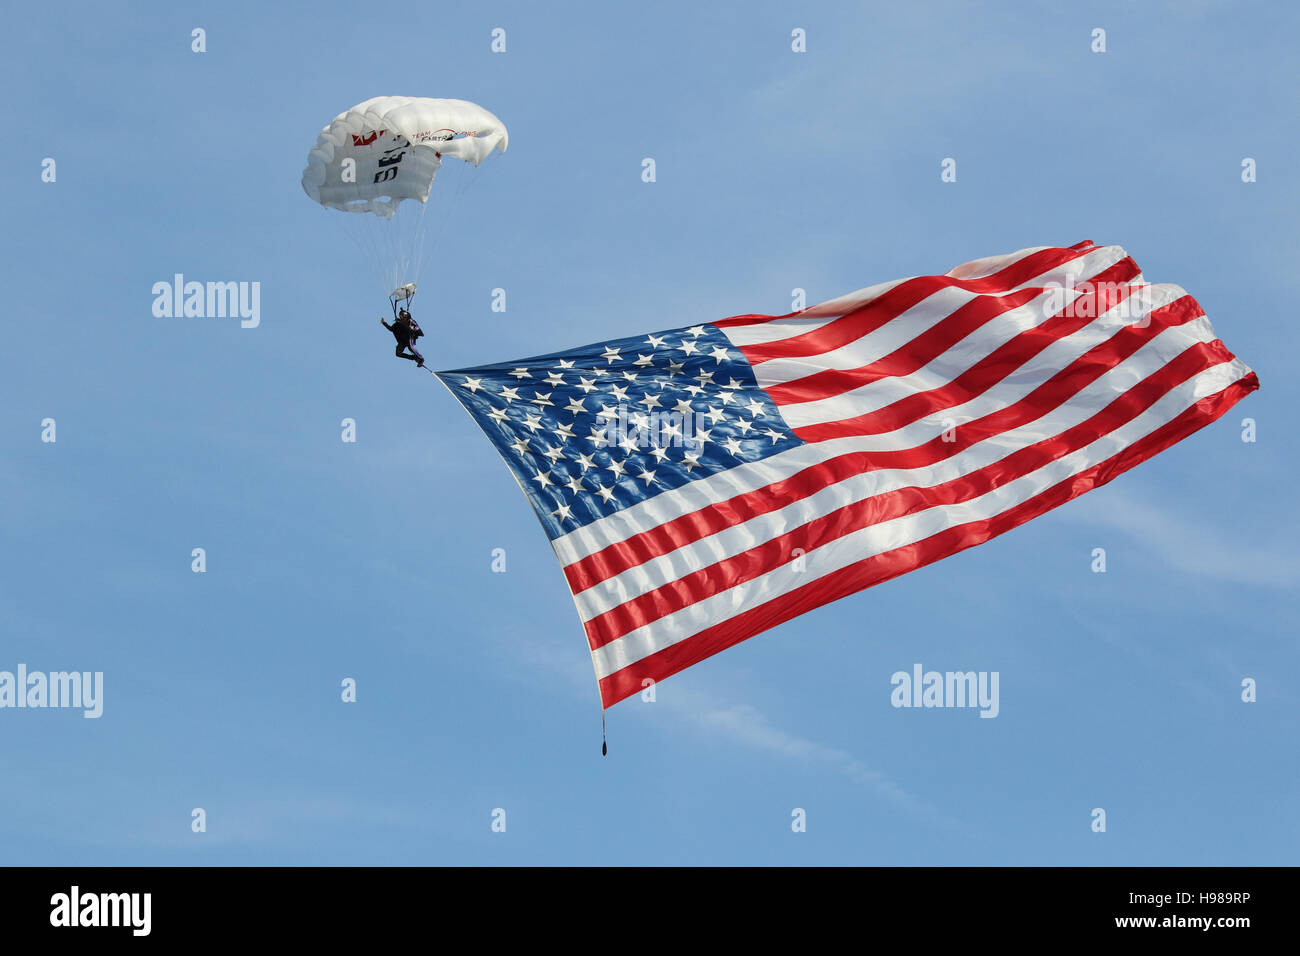 Fallschirmspringer aus FastTrax.com fliegt in die amerikanische Flagge. Dayton Drachen, fünfte dritte Feld, Dayton, Ohio, USA. Stockfoto